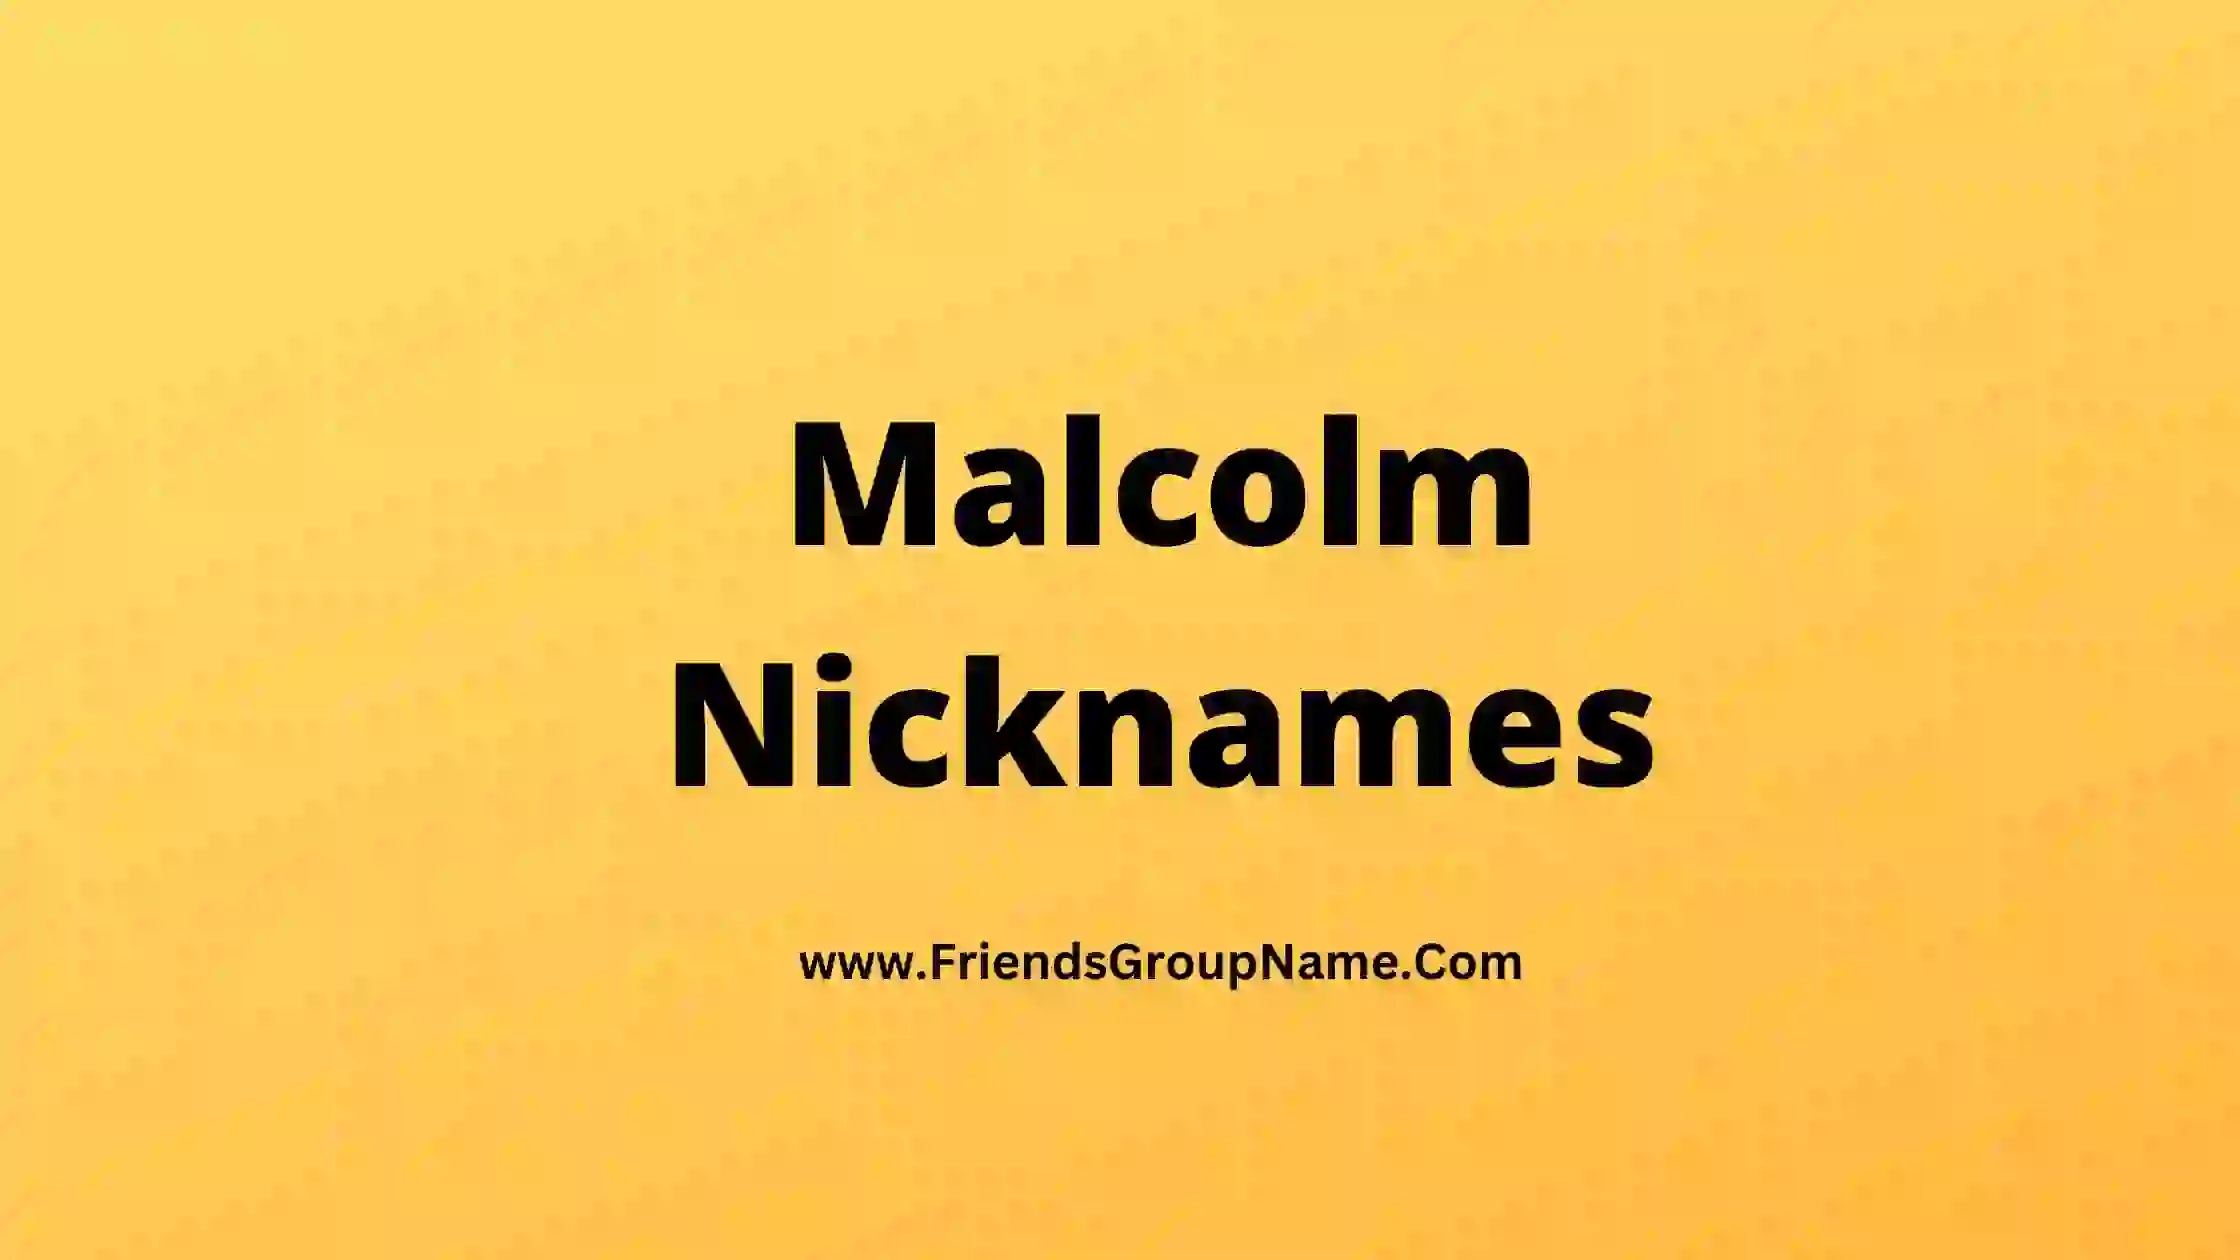 Malcolm Nicknames